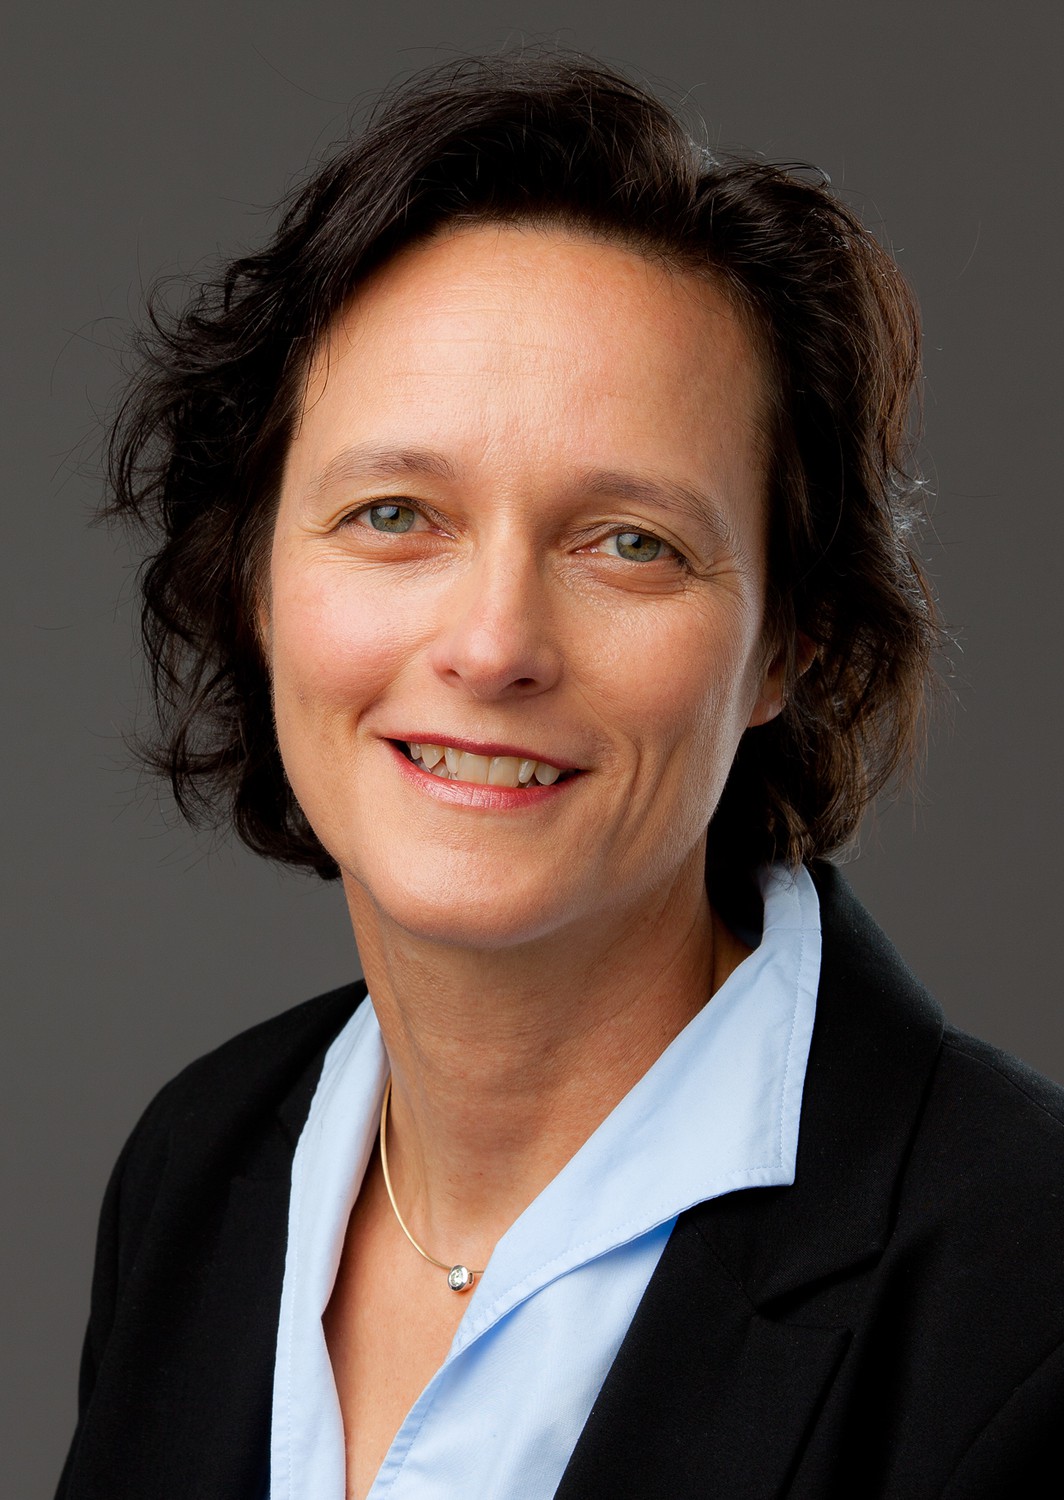 Prof. Iris Chaberny. Direktorin des UKL-Instituts für Hygiene/Krankenhaushygiene